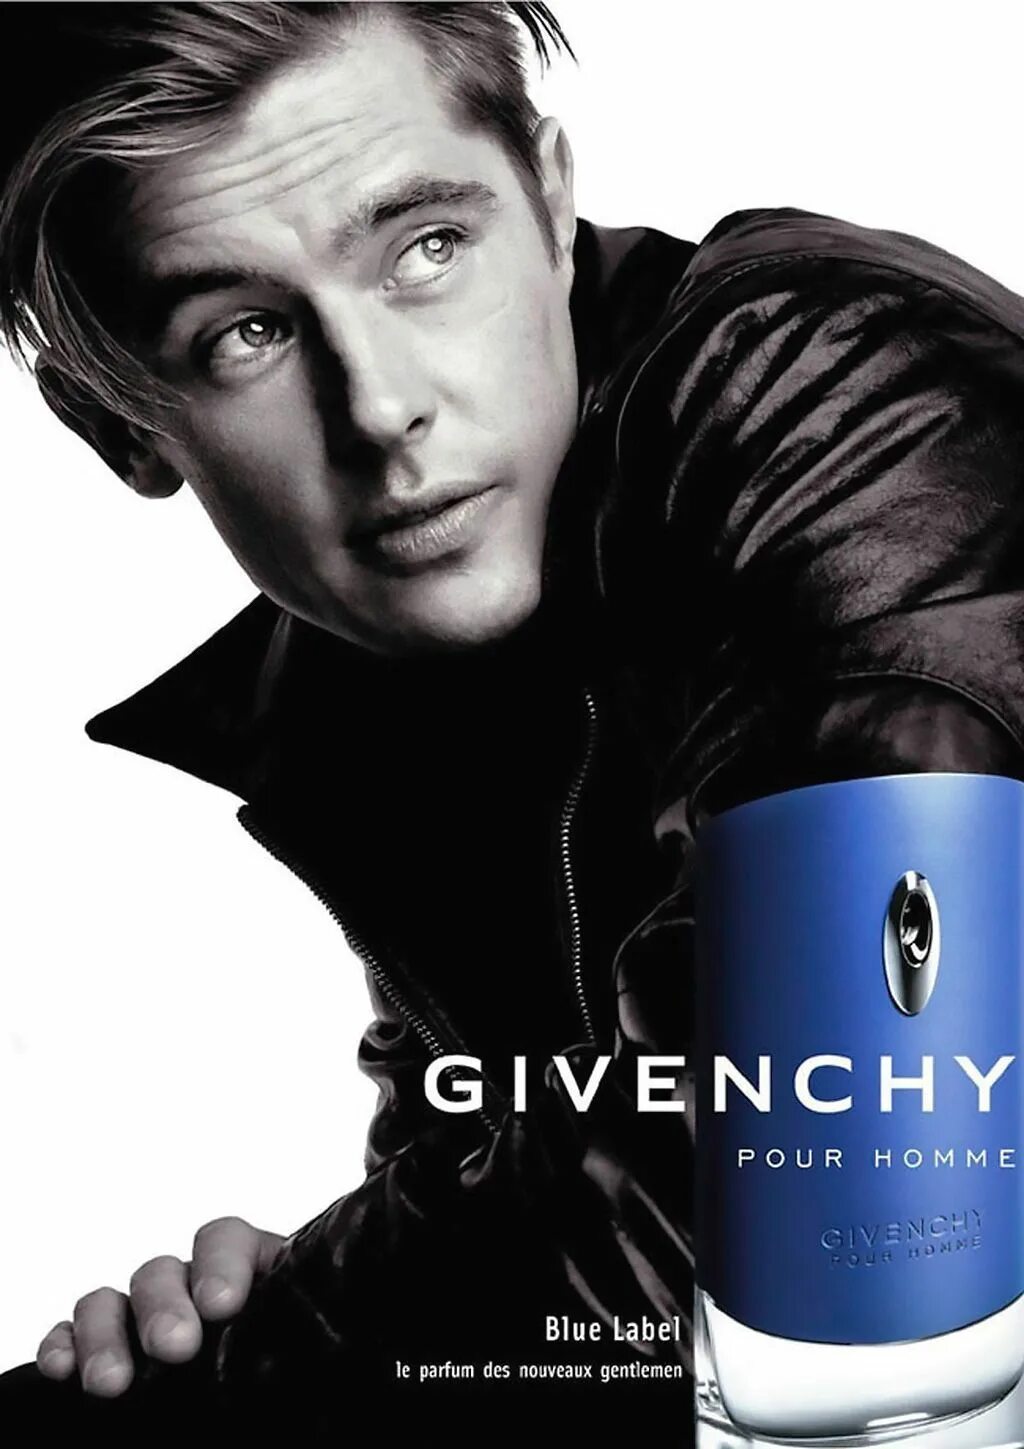 Givenchy pour homme Blue Label. Givenchy pour homme Blue Label 100ml. Мужские духи Givenchy "pour homme Blue Label" 100 ml. Givenchy pour homme Blue Label 100. Pour homme для мужчин